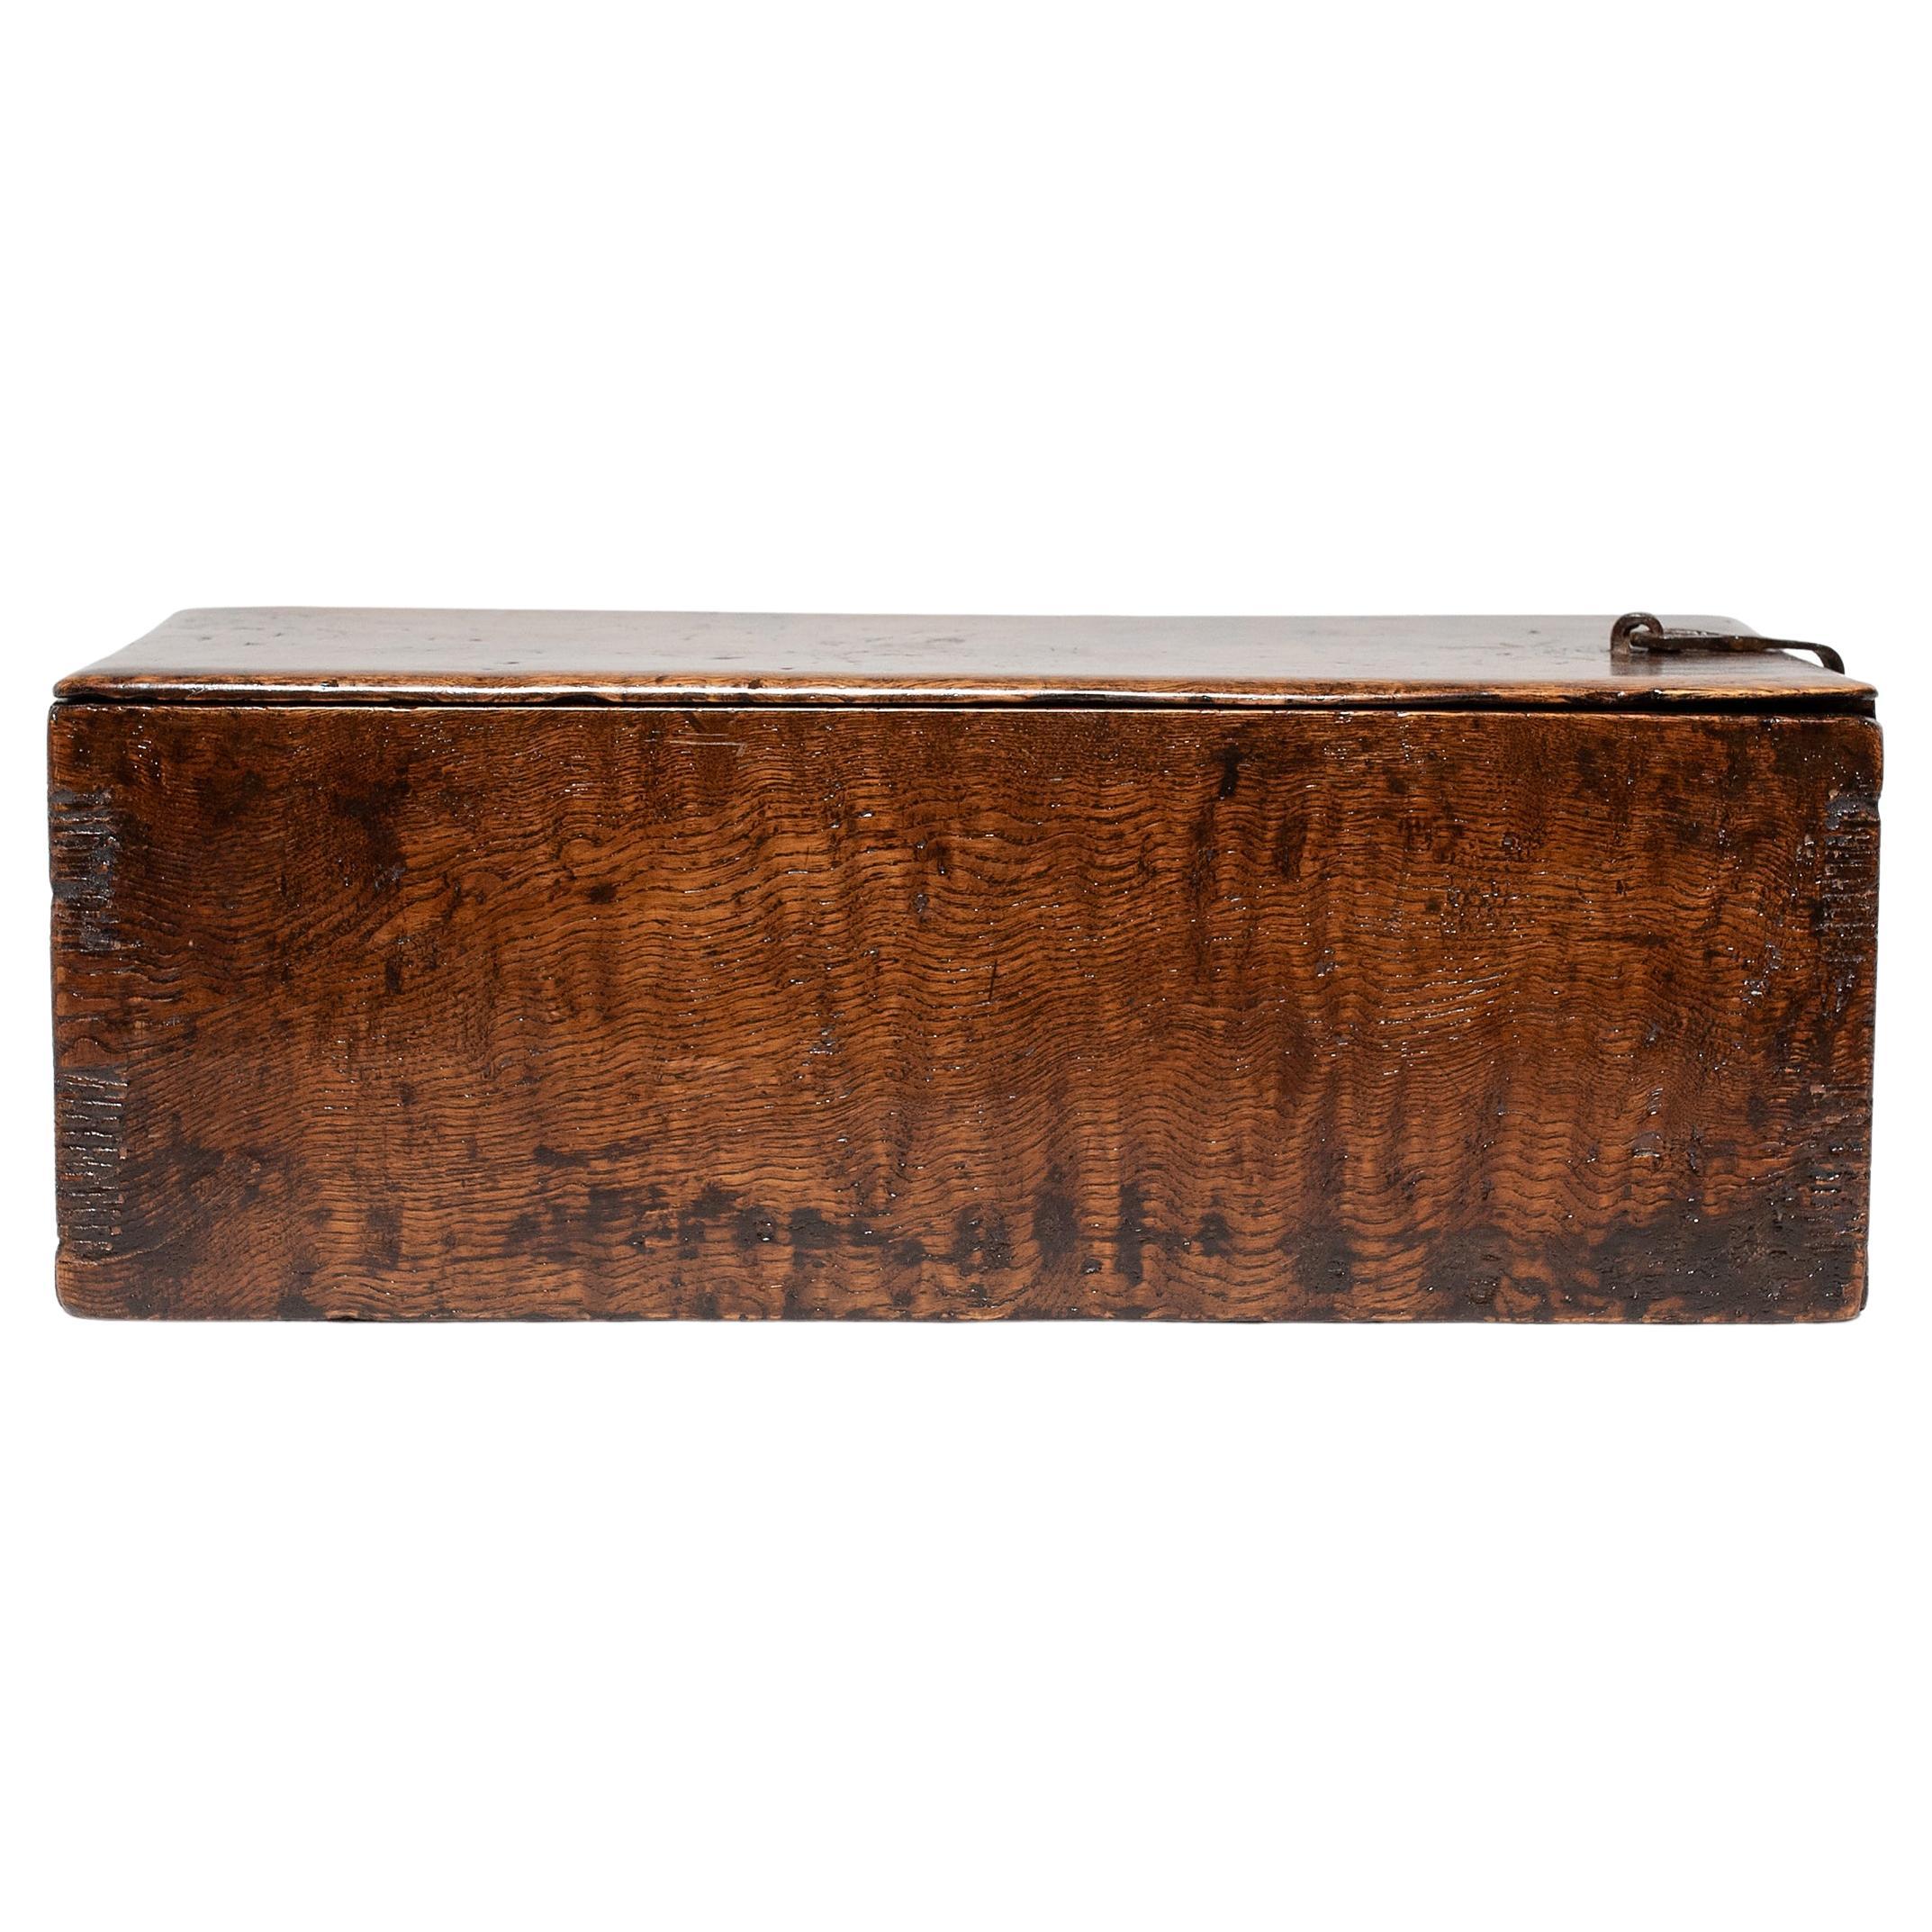 Chinese Burl Wood Document Box, c. 1900